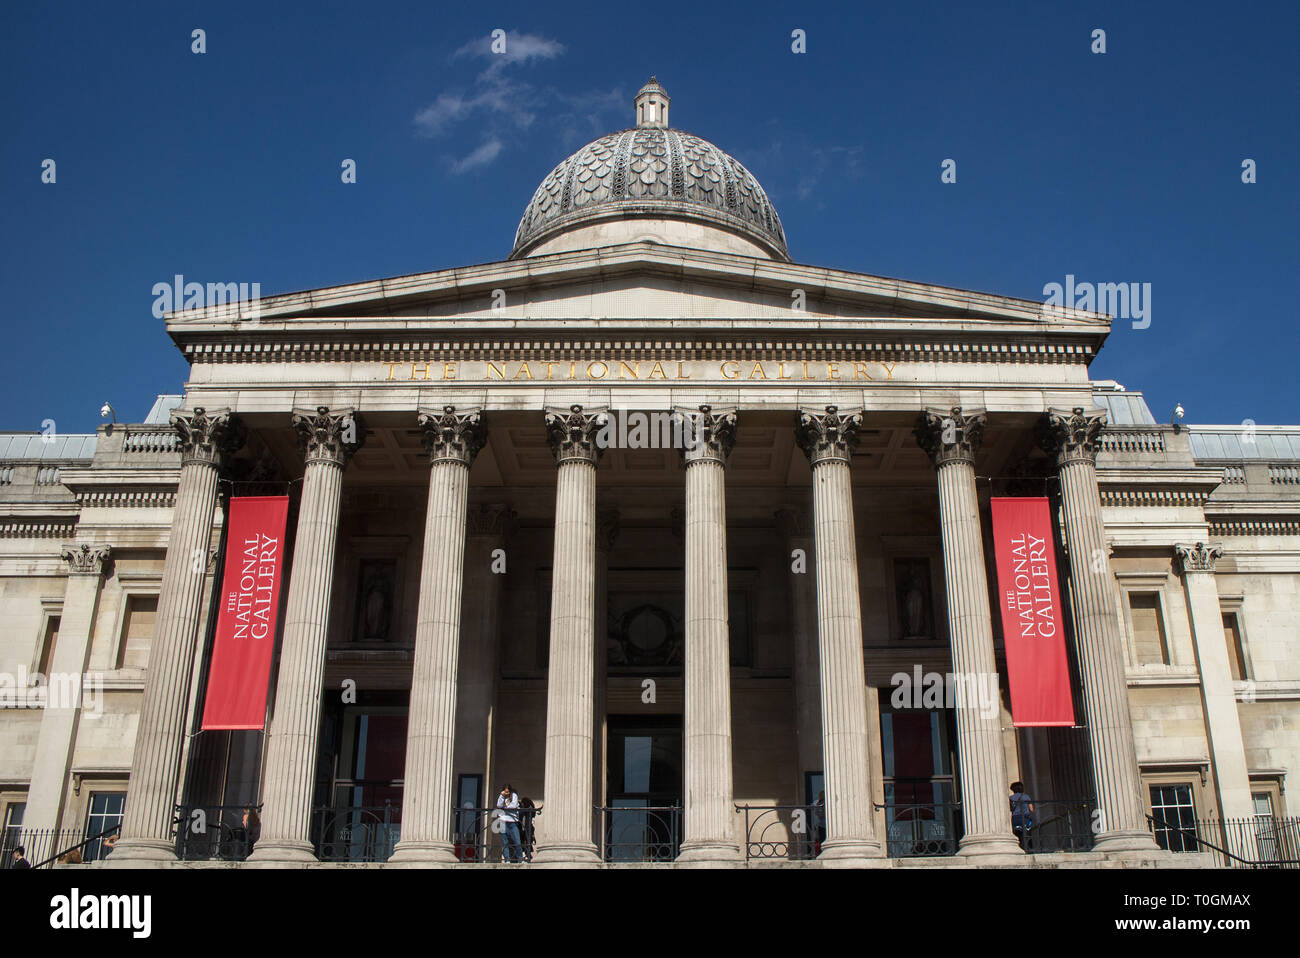 Entrée principale de la Galerie nationale, Londres Banque D'Images